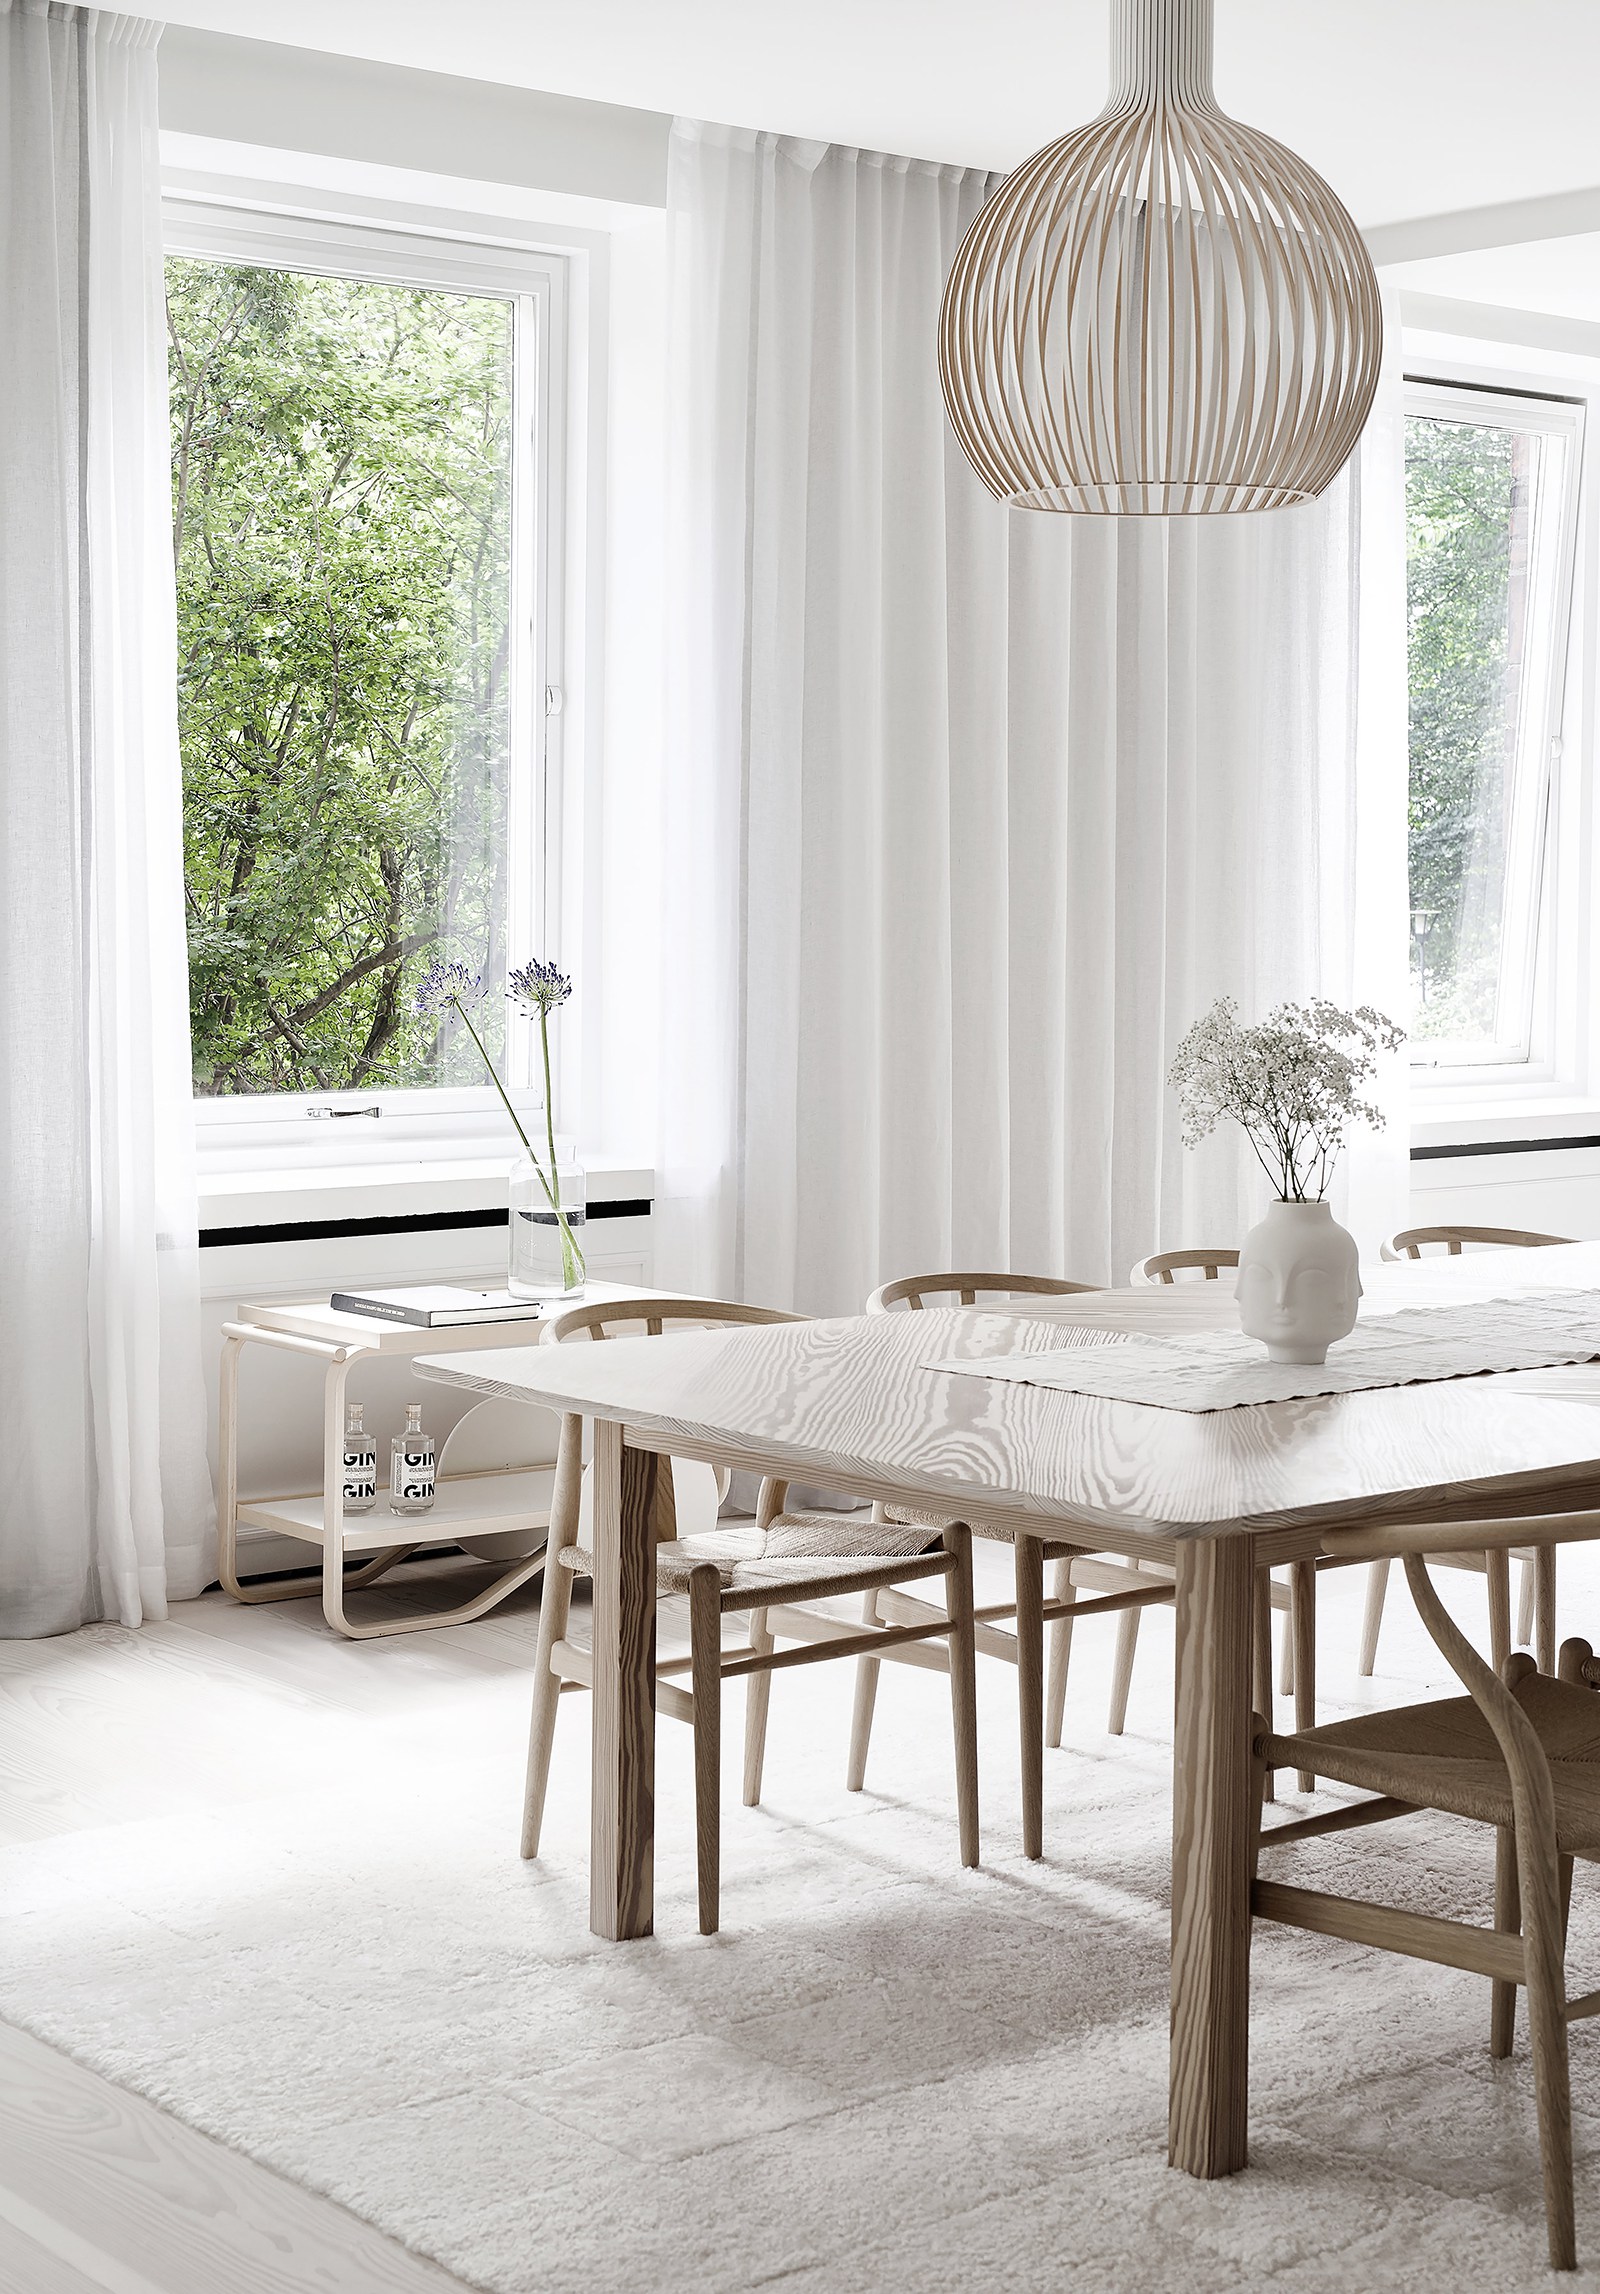 Interior Inspiration Linee Pure E Total White Per Illuminare L Home Styling In The Mood For Design